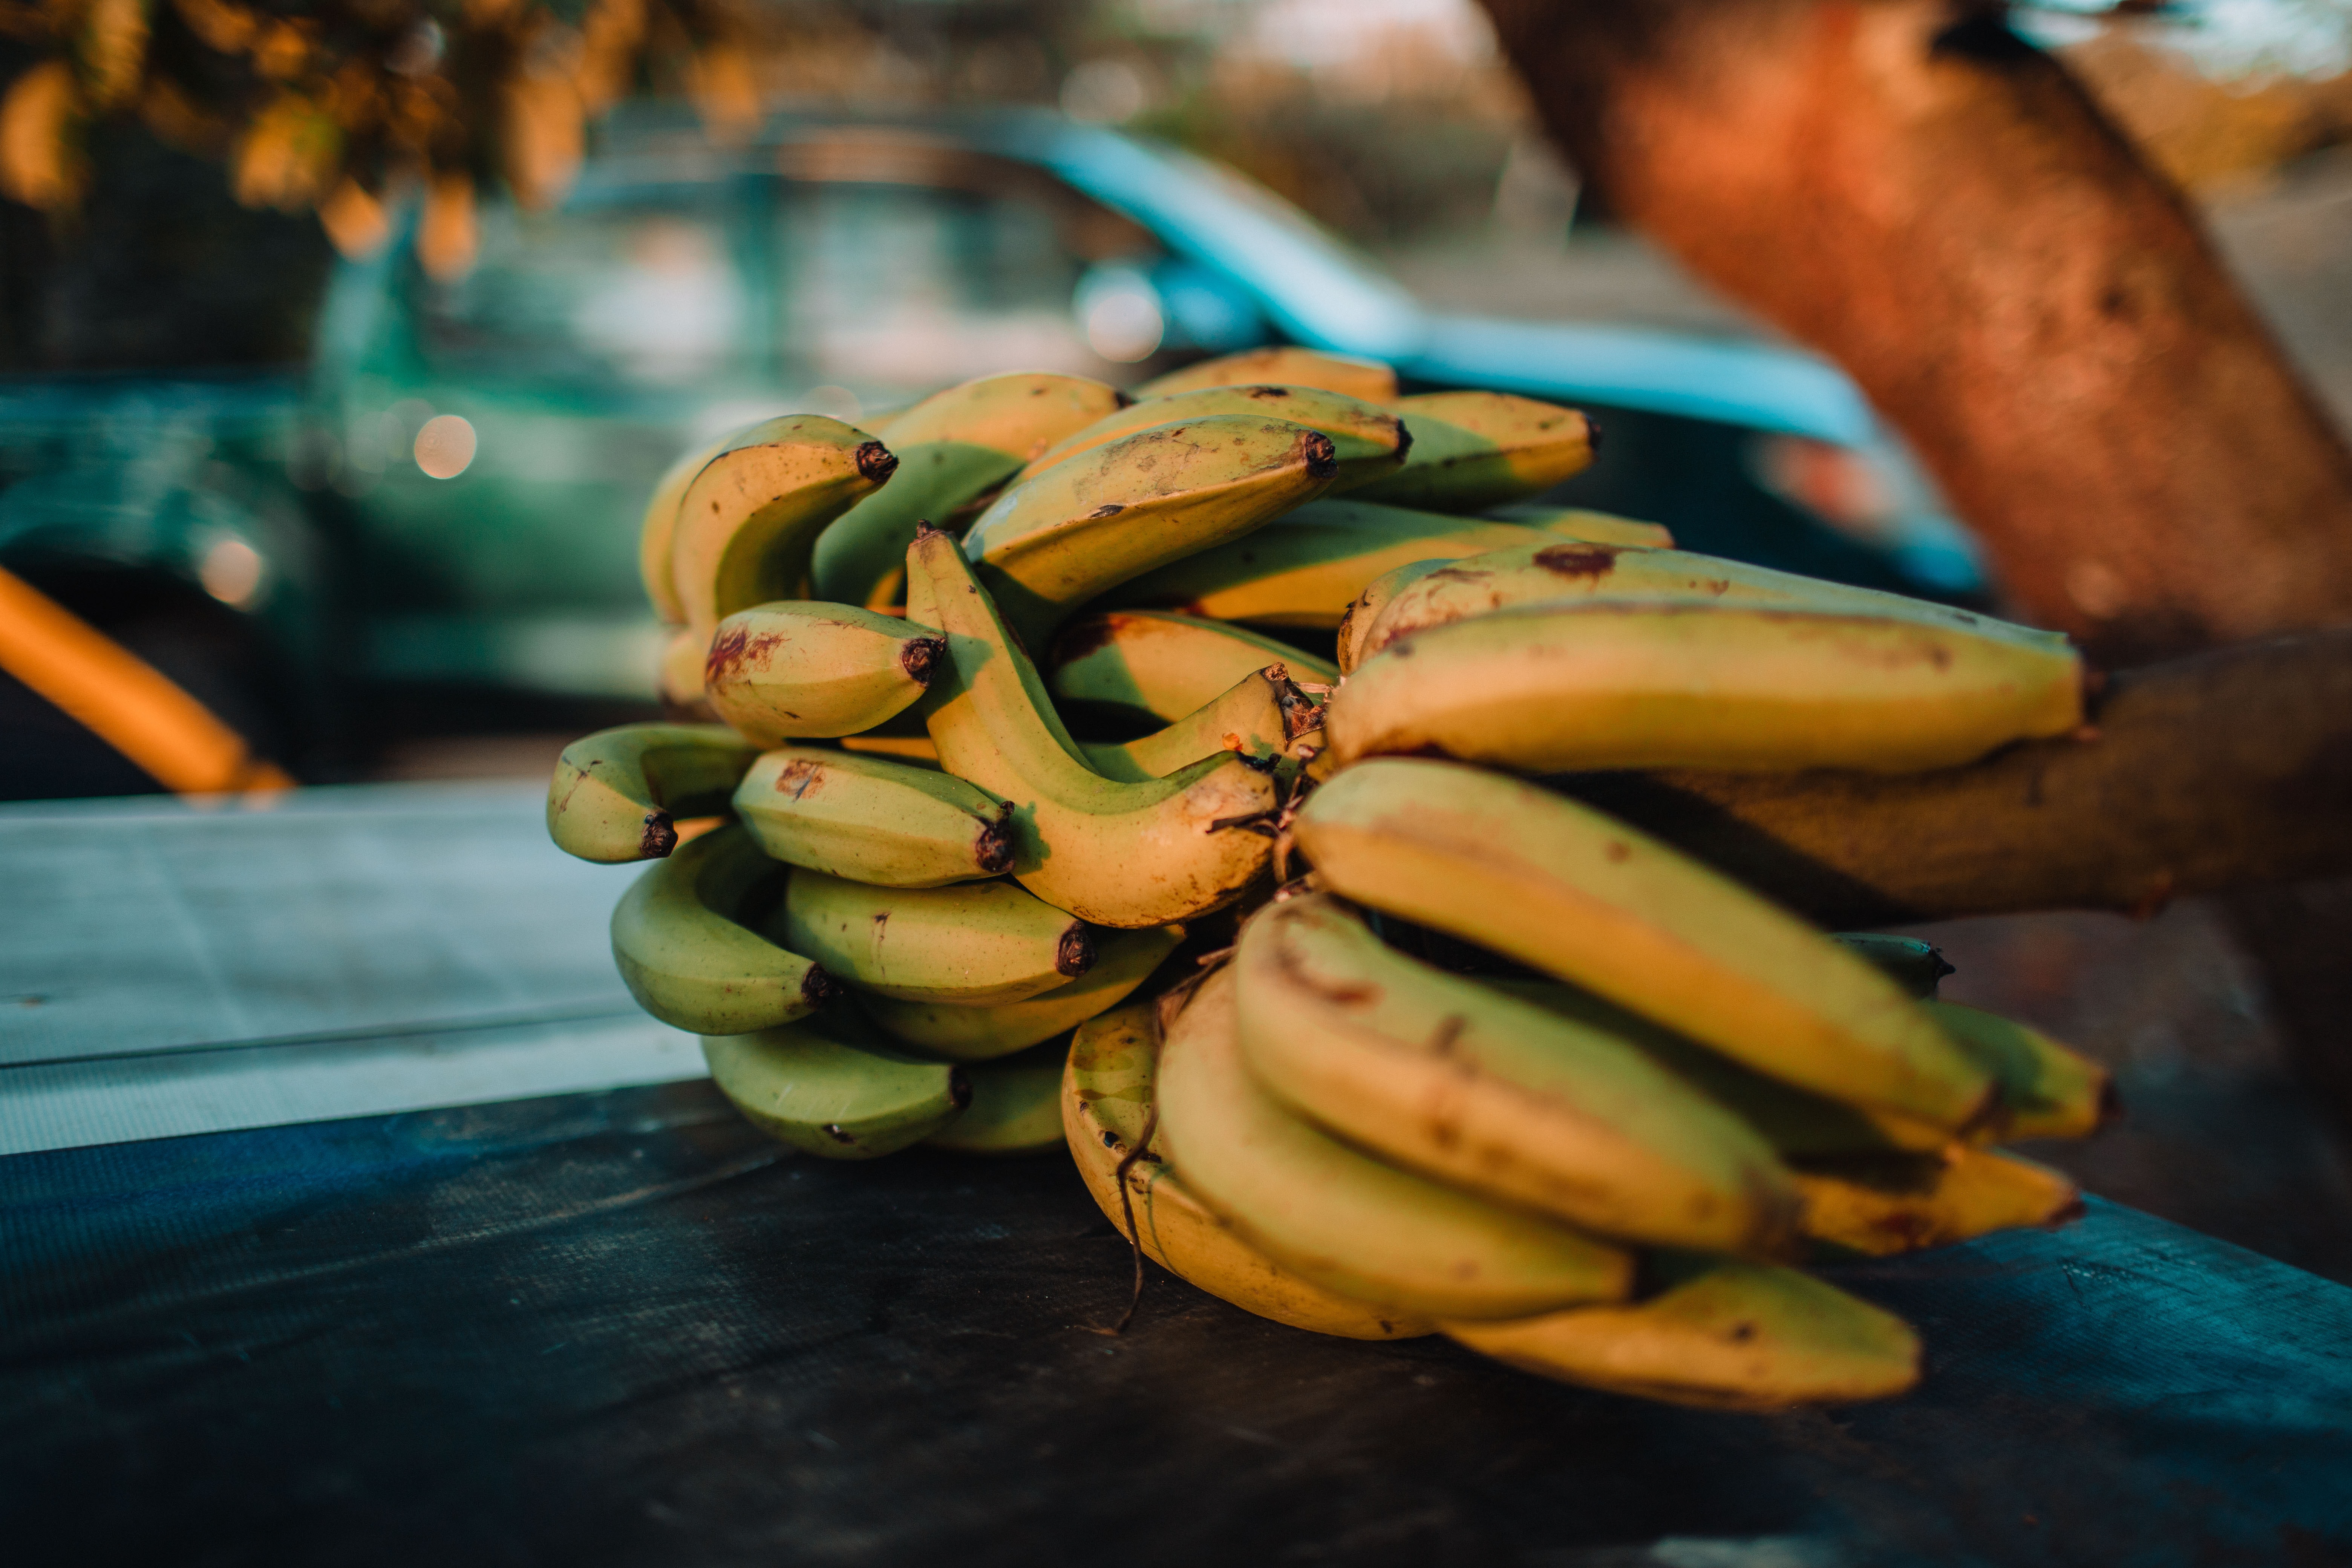 तसेच, दक्षिण भारत, बिहार आणि झारखंडमध्ये रस्थाली केळीची लागवड केली जाते. हे मध्यम आकाराचे केळे आहे.